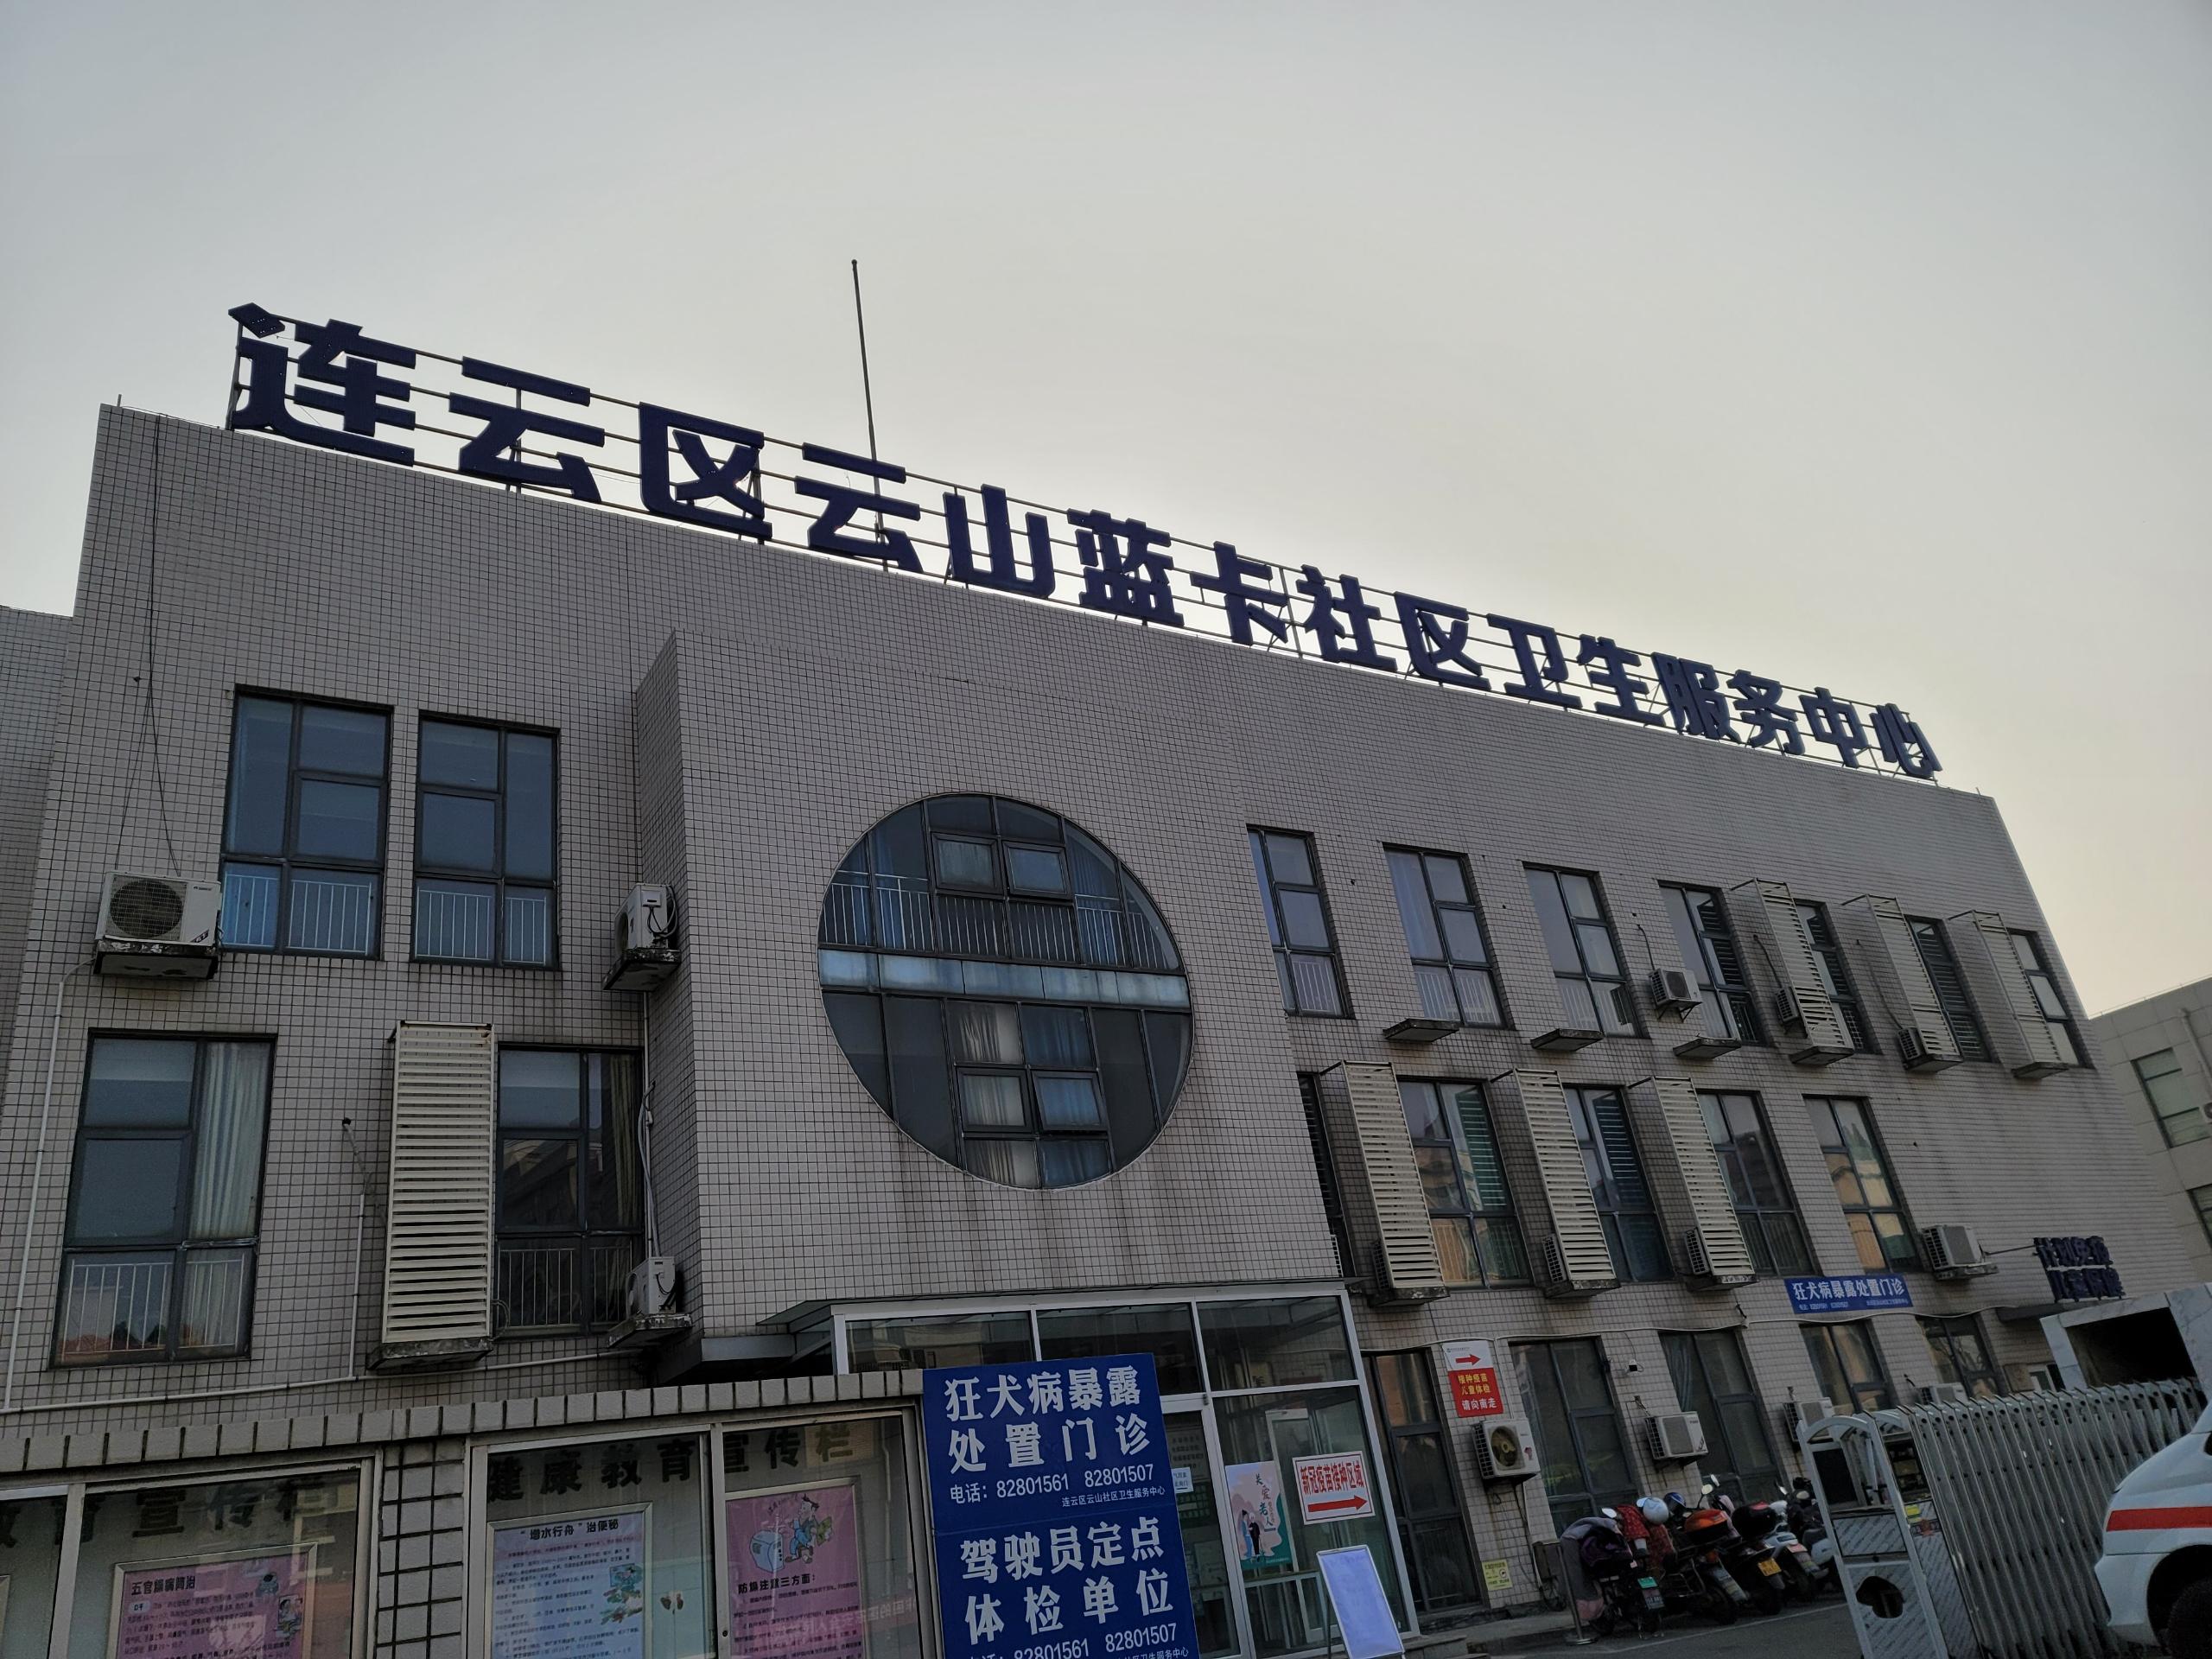 【恭喜】国康人乳分析仪成功“入驻”江苏连云港市蓝卡社区卫生服务中心